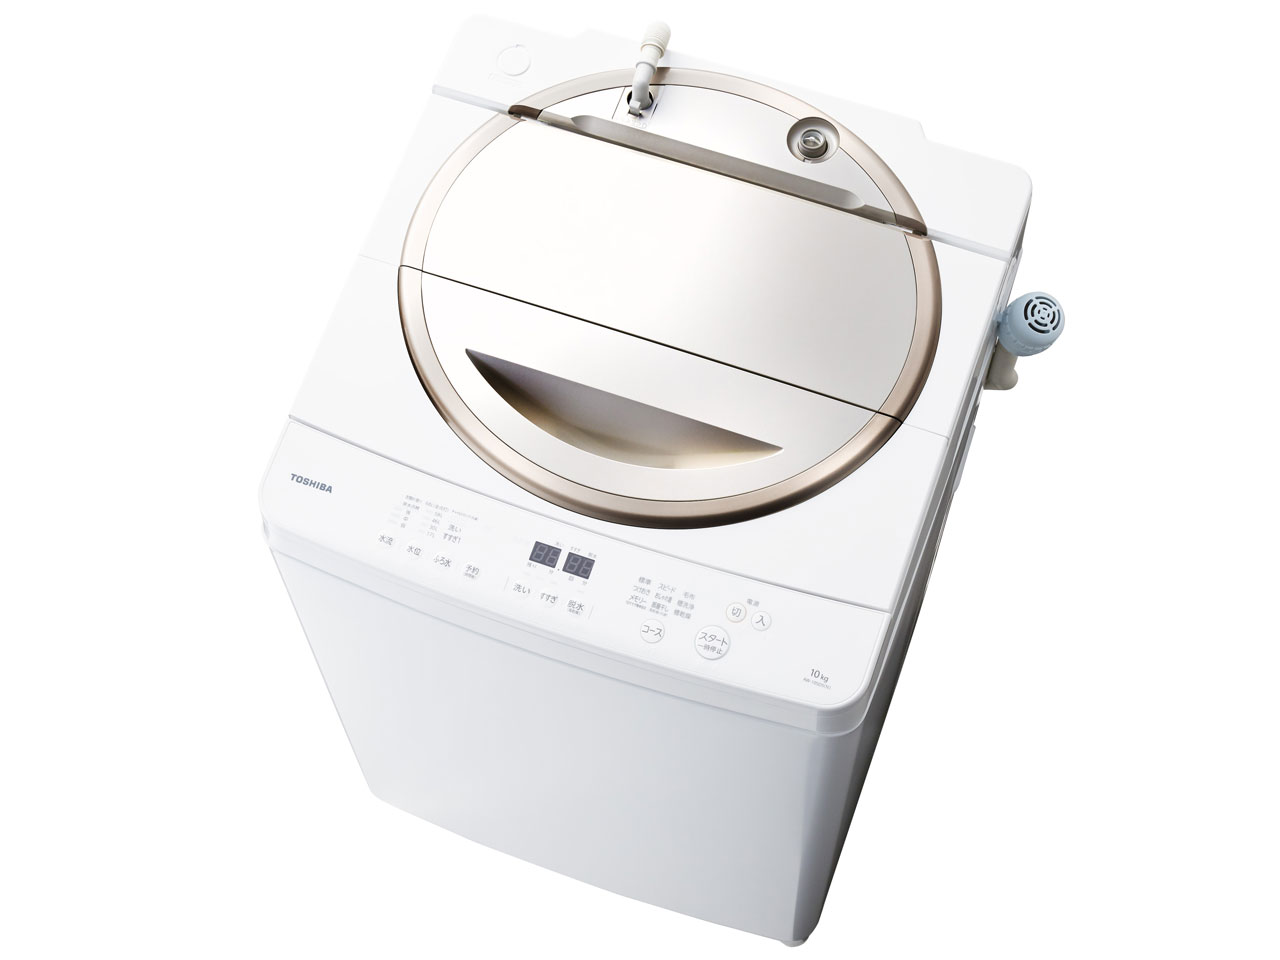 東芝 AW-10SD5(N) 全自動洗濯機「マジックドラム」(洗濯・脱水10kg) サテンゴールド